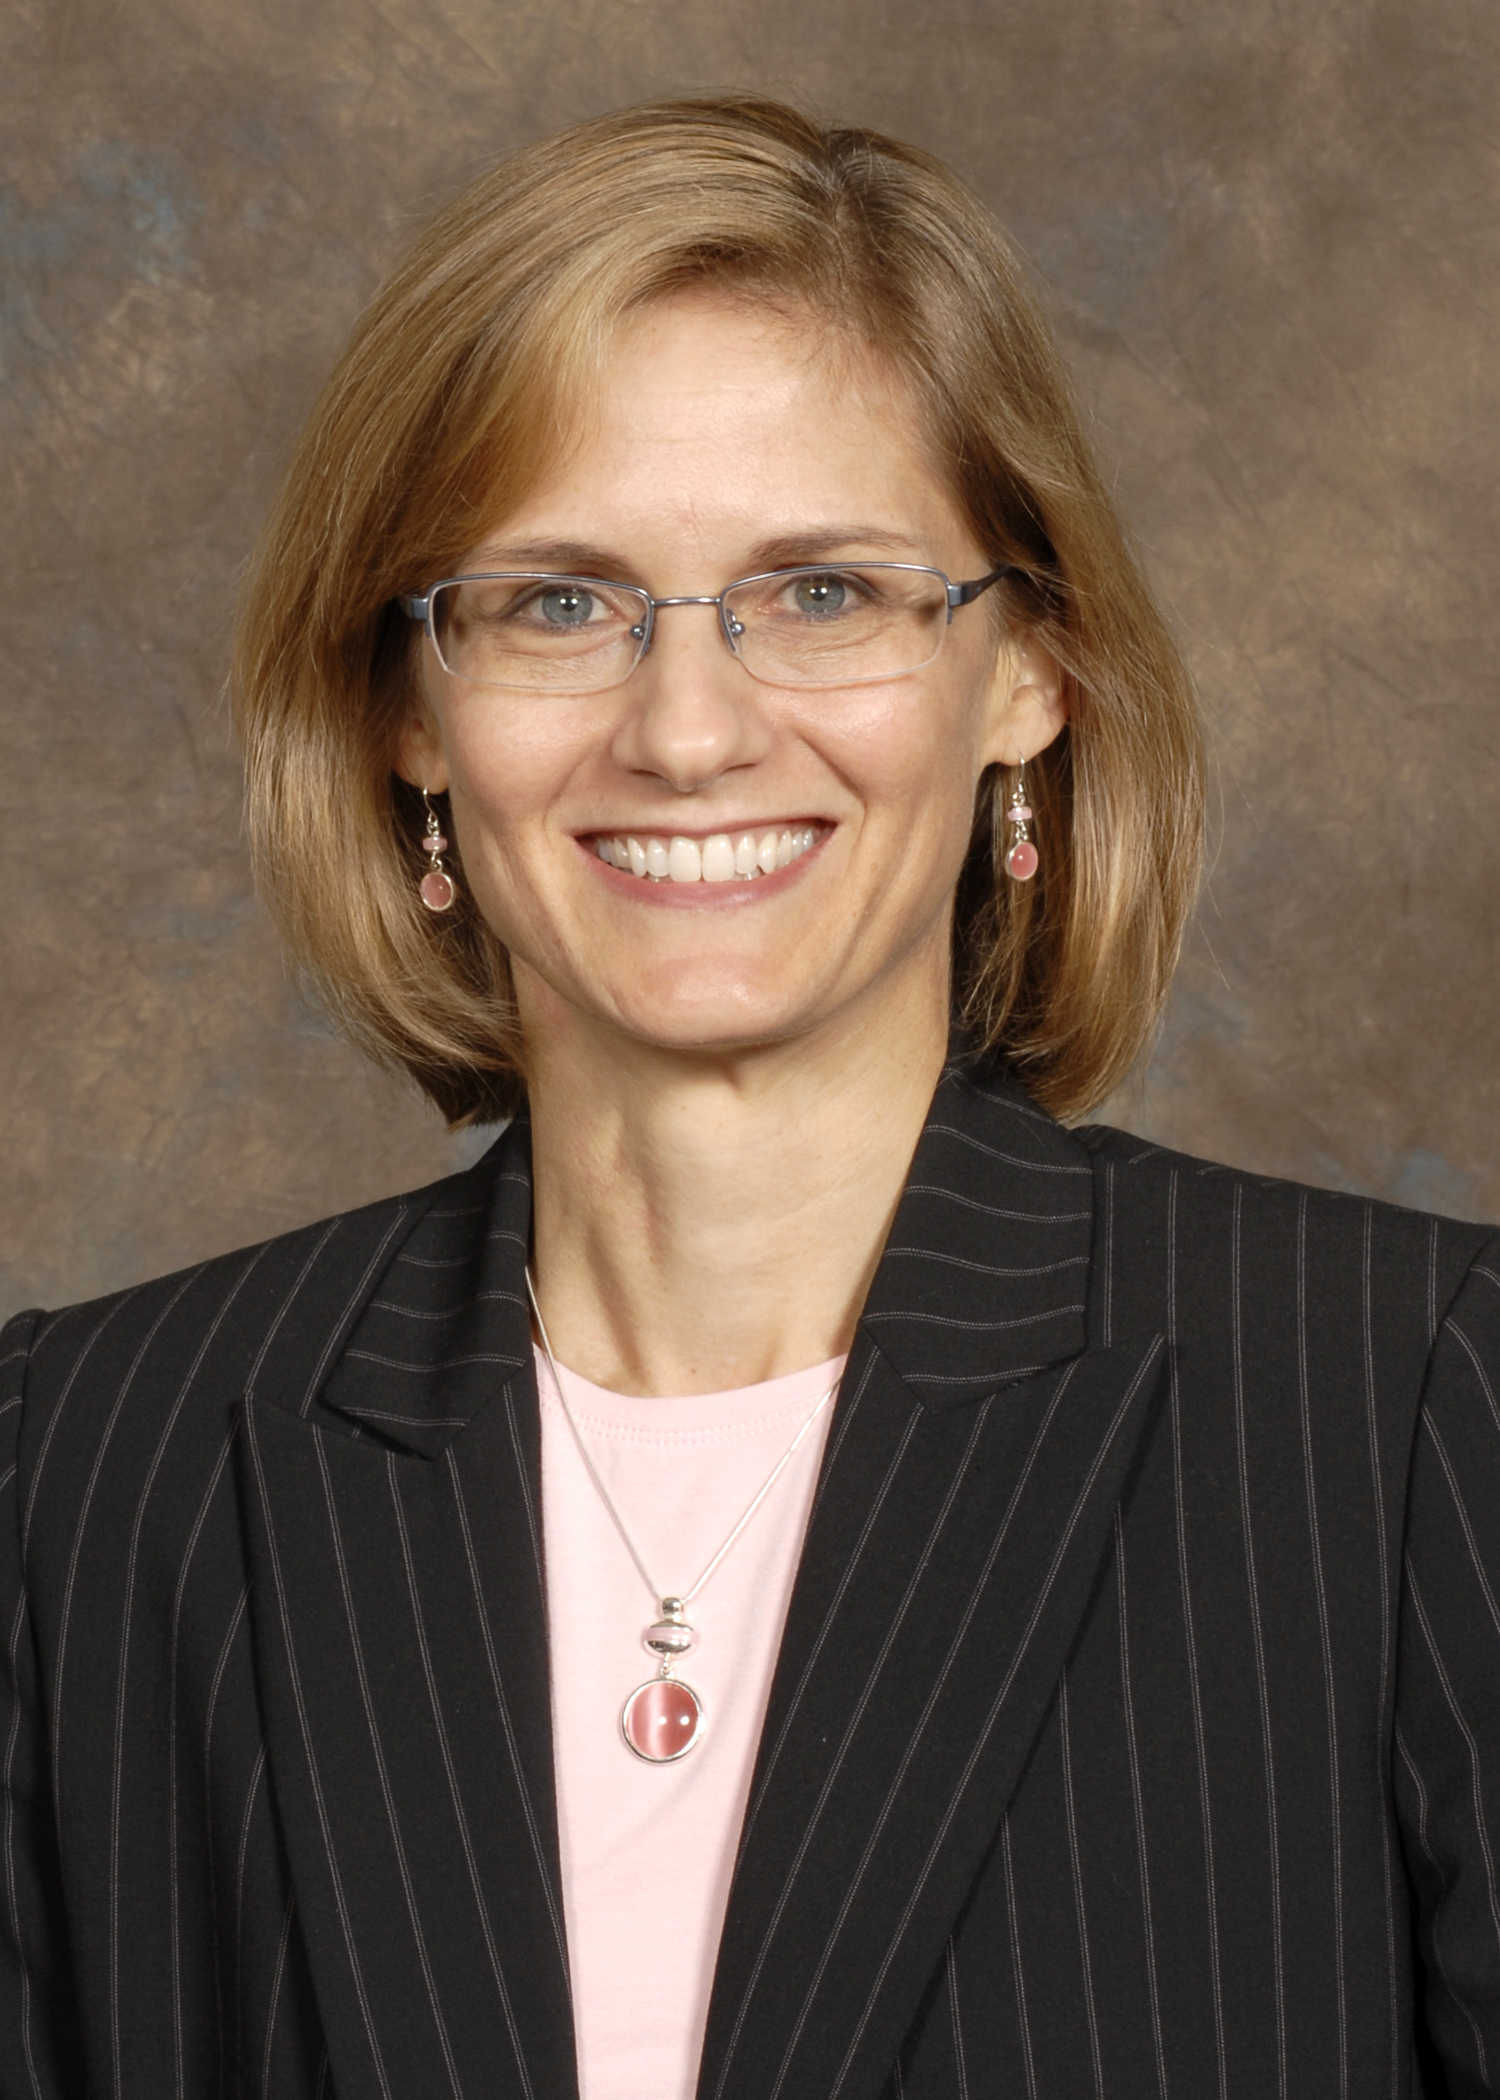 Melanie Myers, M.S., Ph.D., C.G.C.